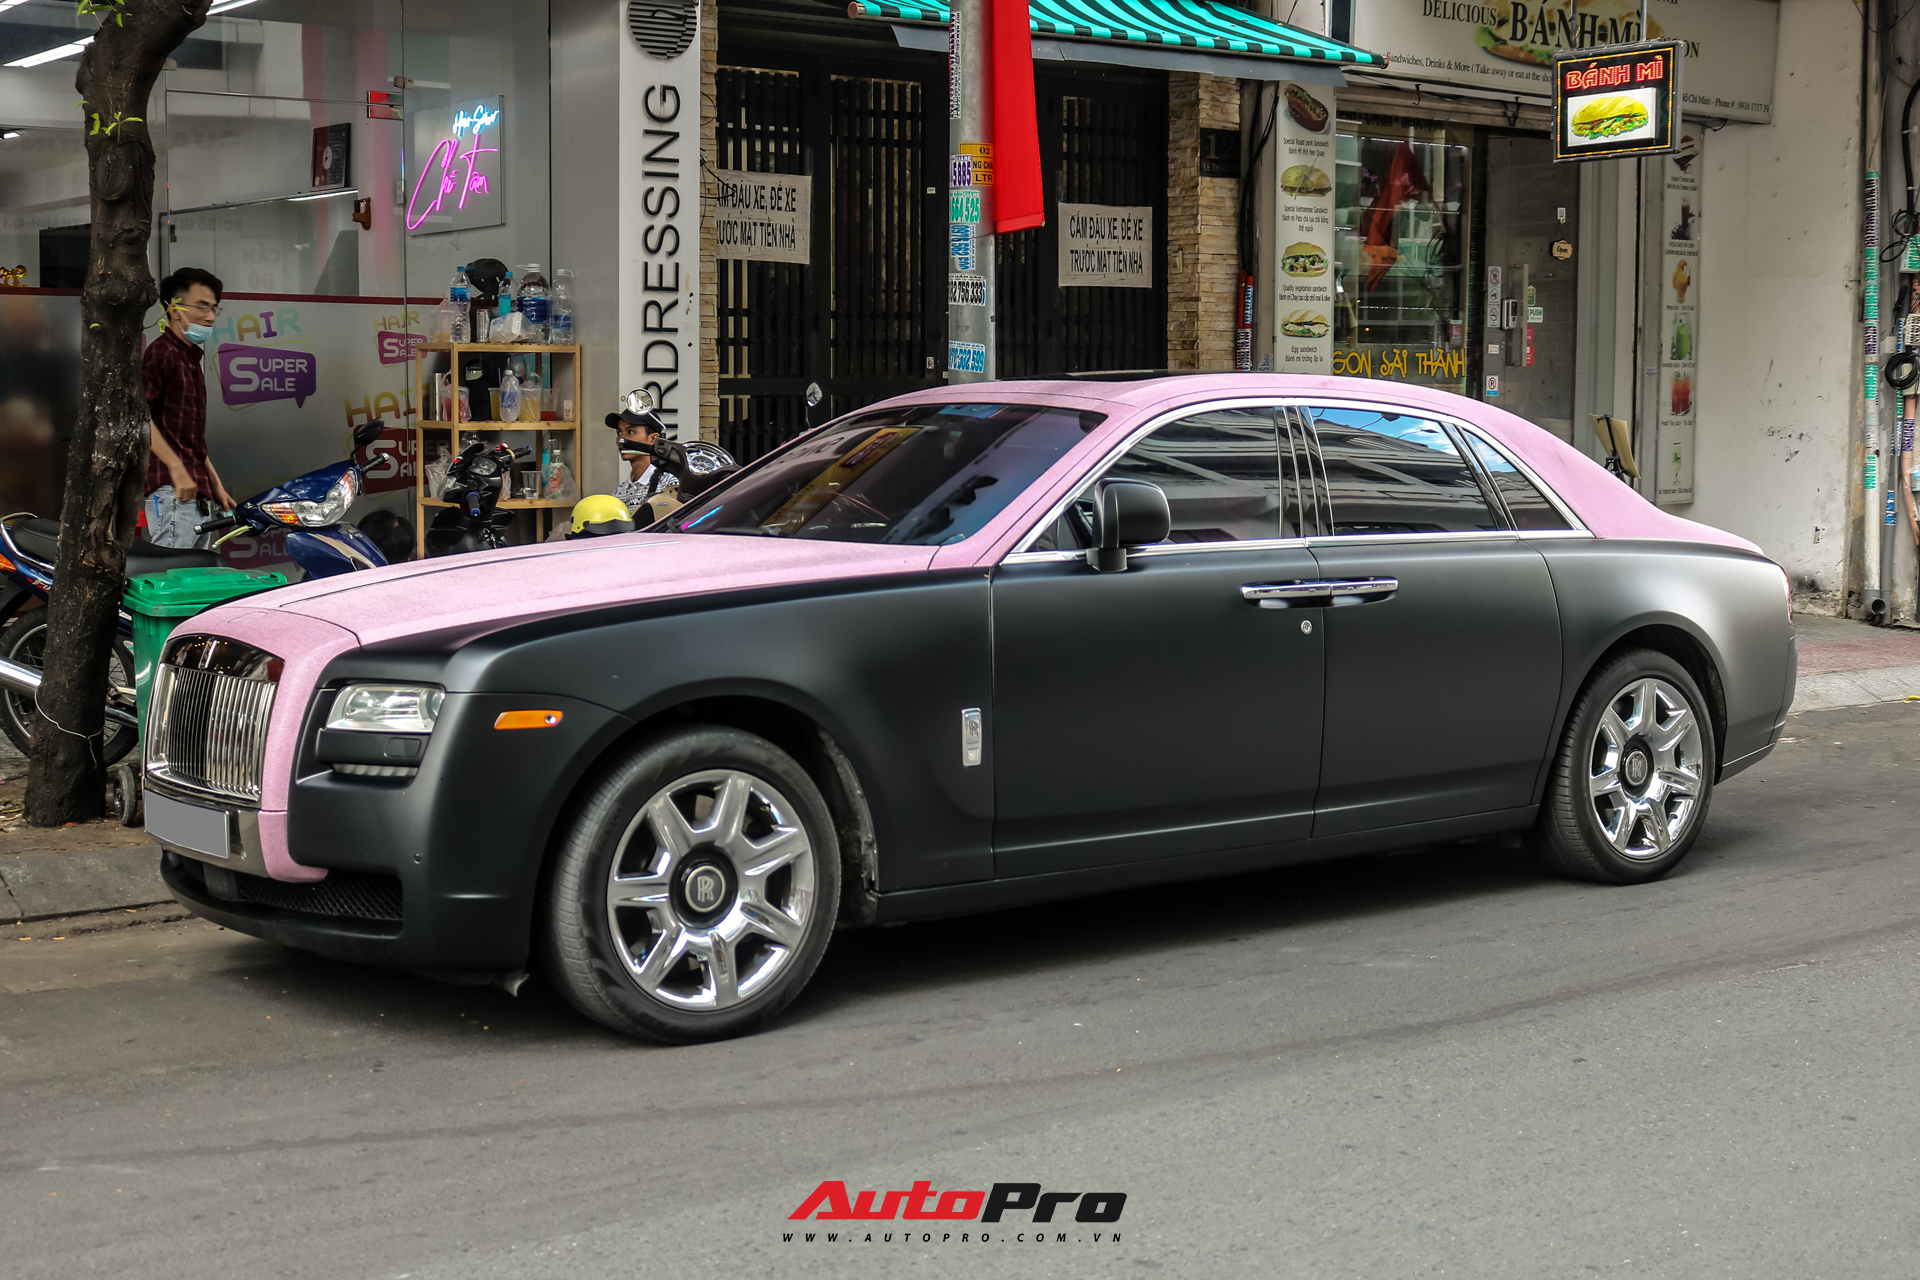 Mặc kệ drama, Ngọc Trinh mang Rolls-Royce Ghost bản Black Pink siêu độc lên phố chơi cuối tuần - Ảnh 1.